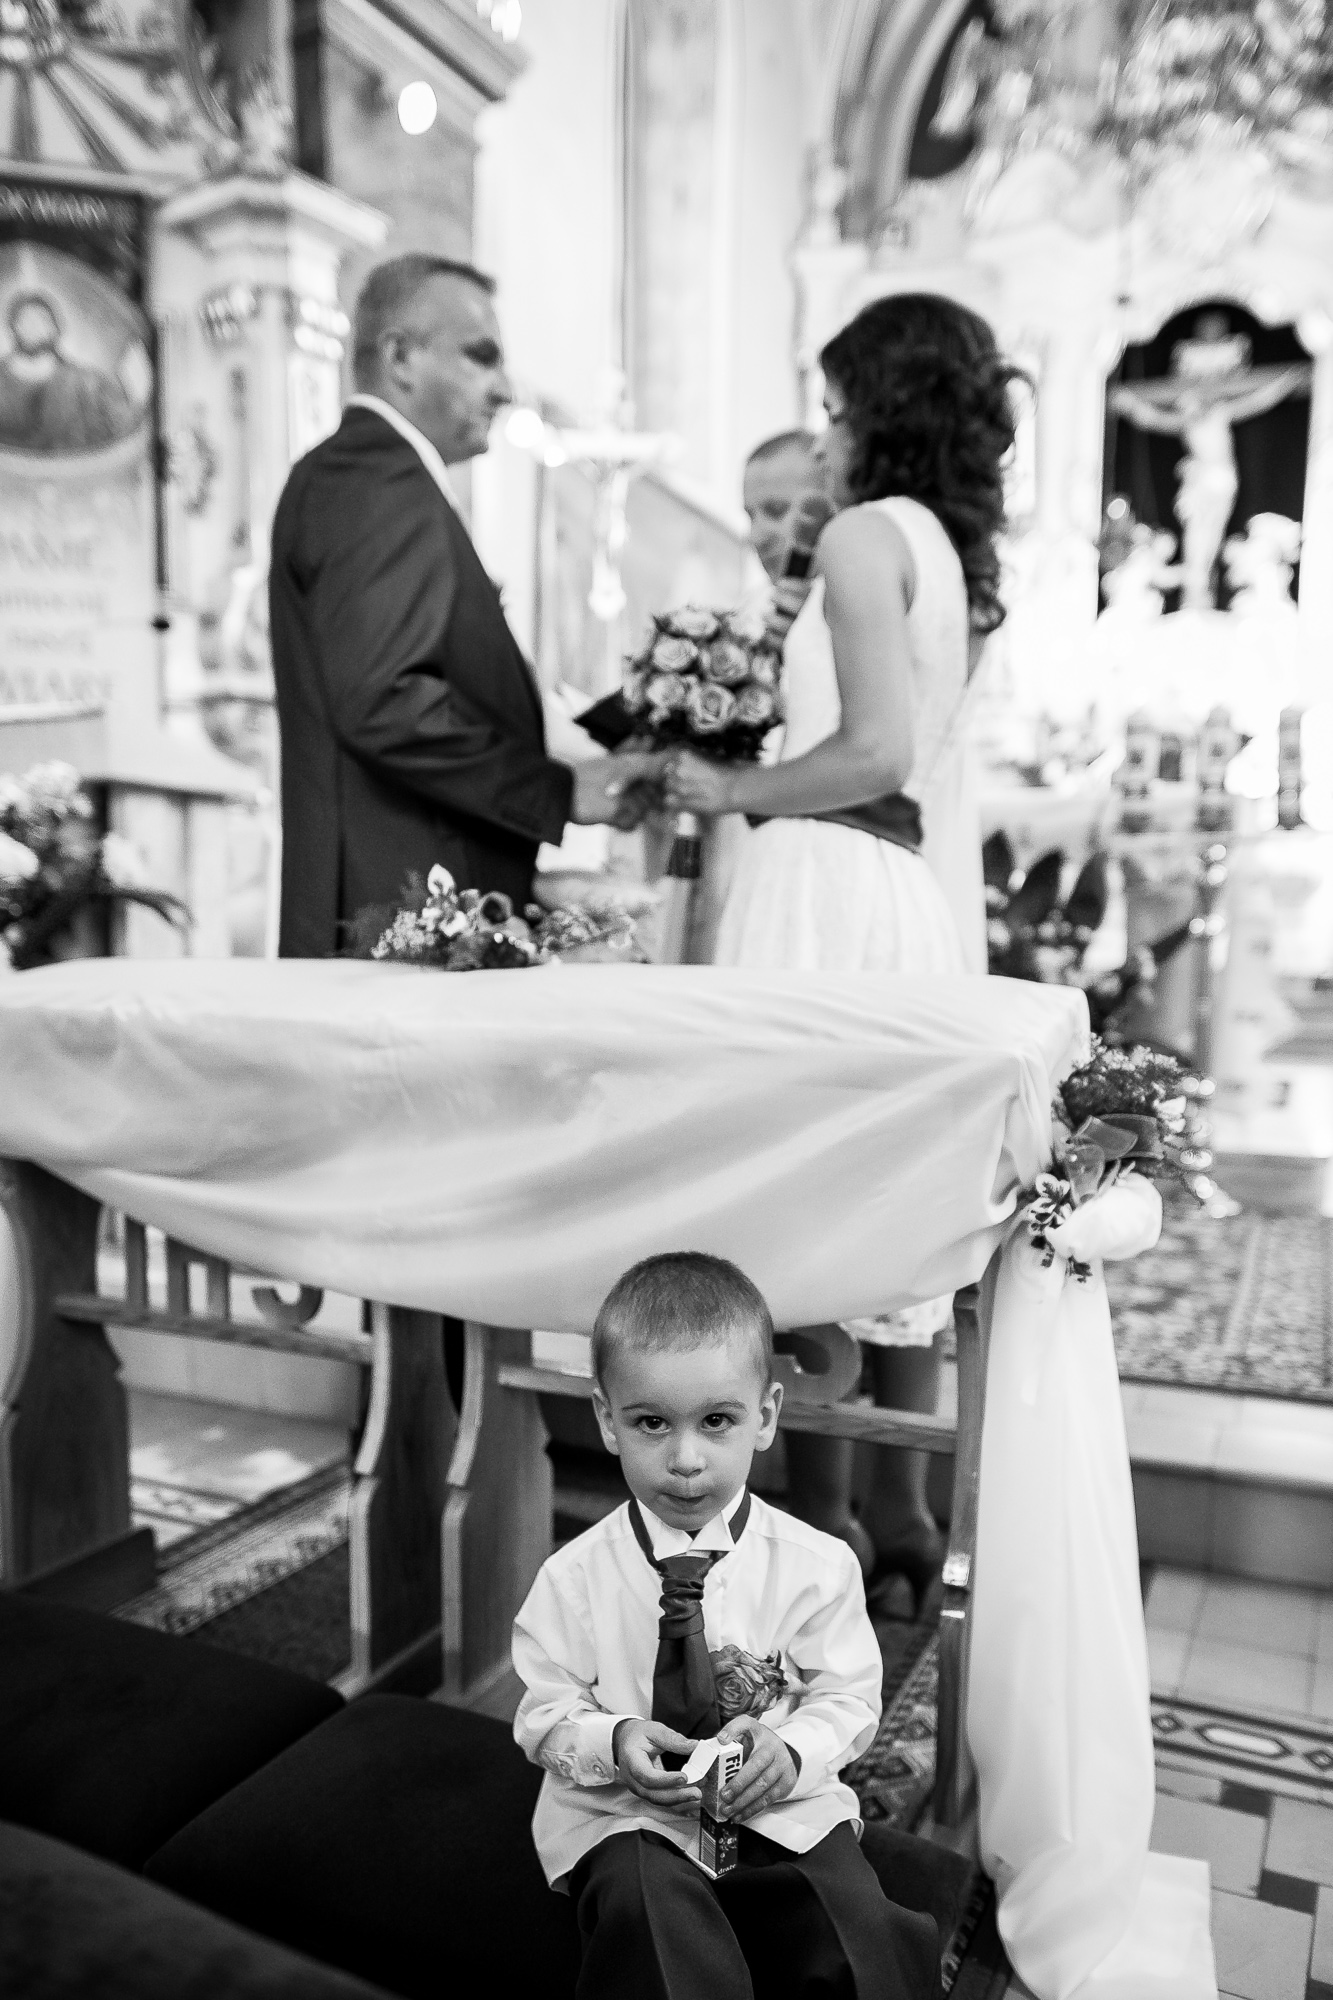 Niesamowite reakcje i zachowanie dzieci na ślubie w obiektywie fotografa